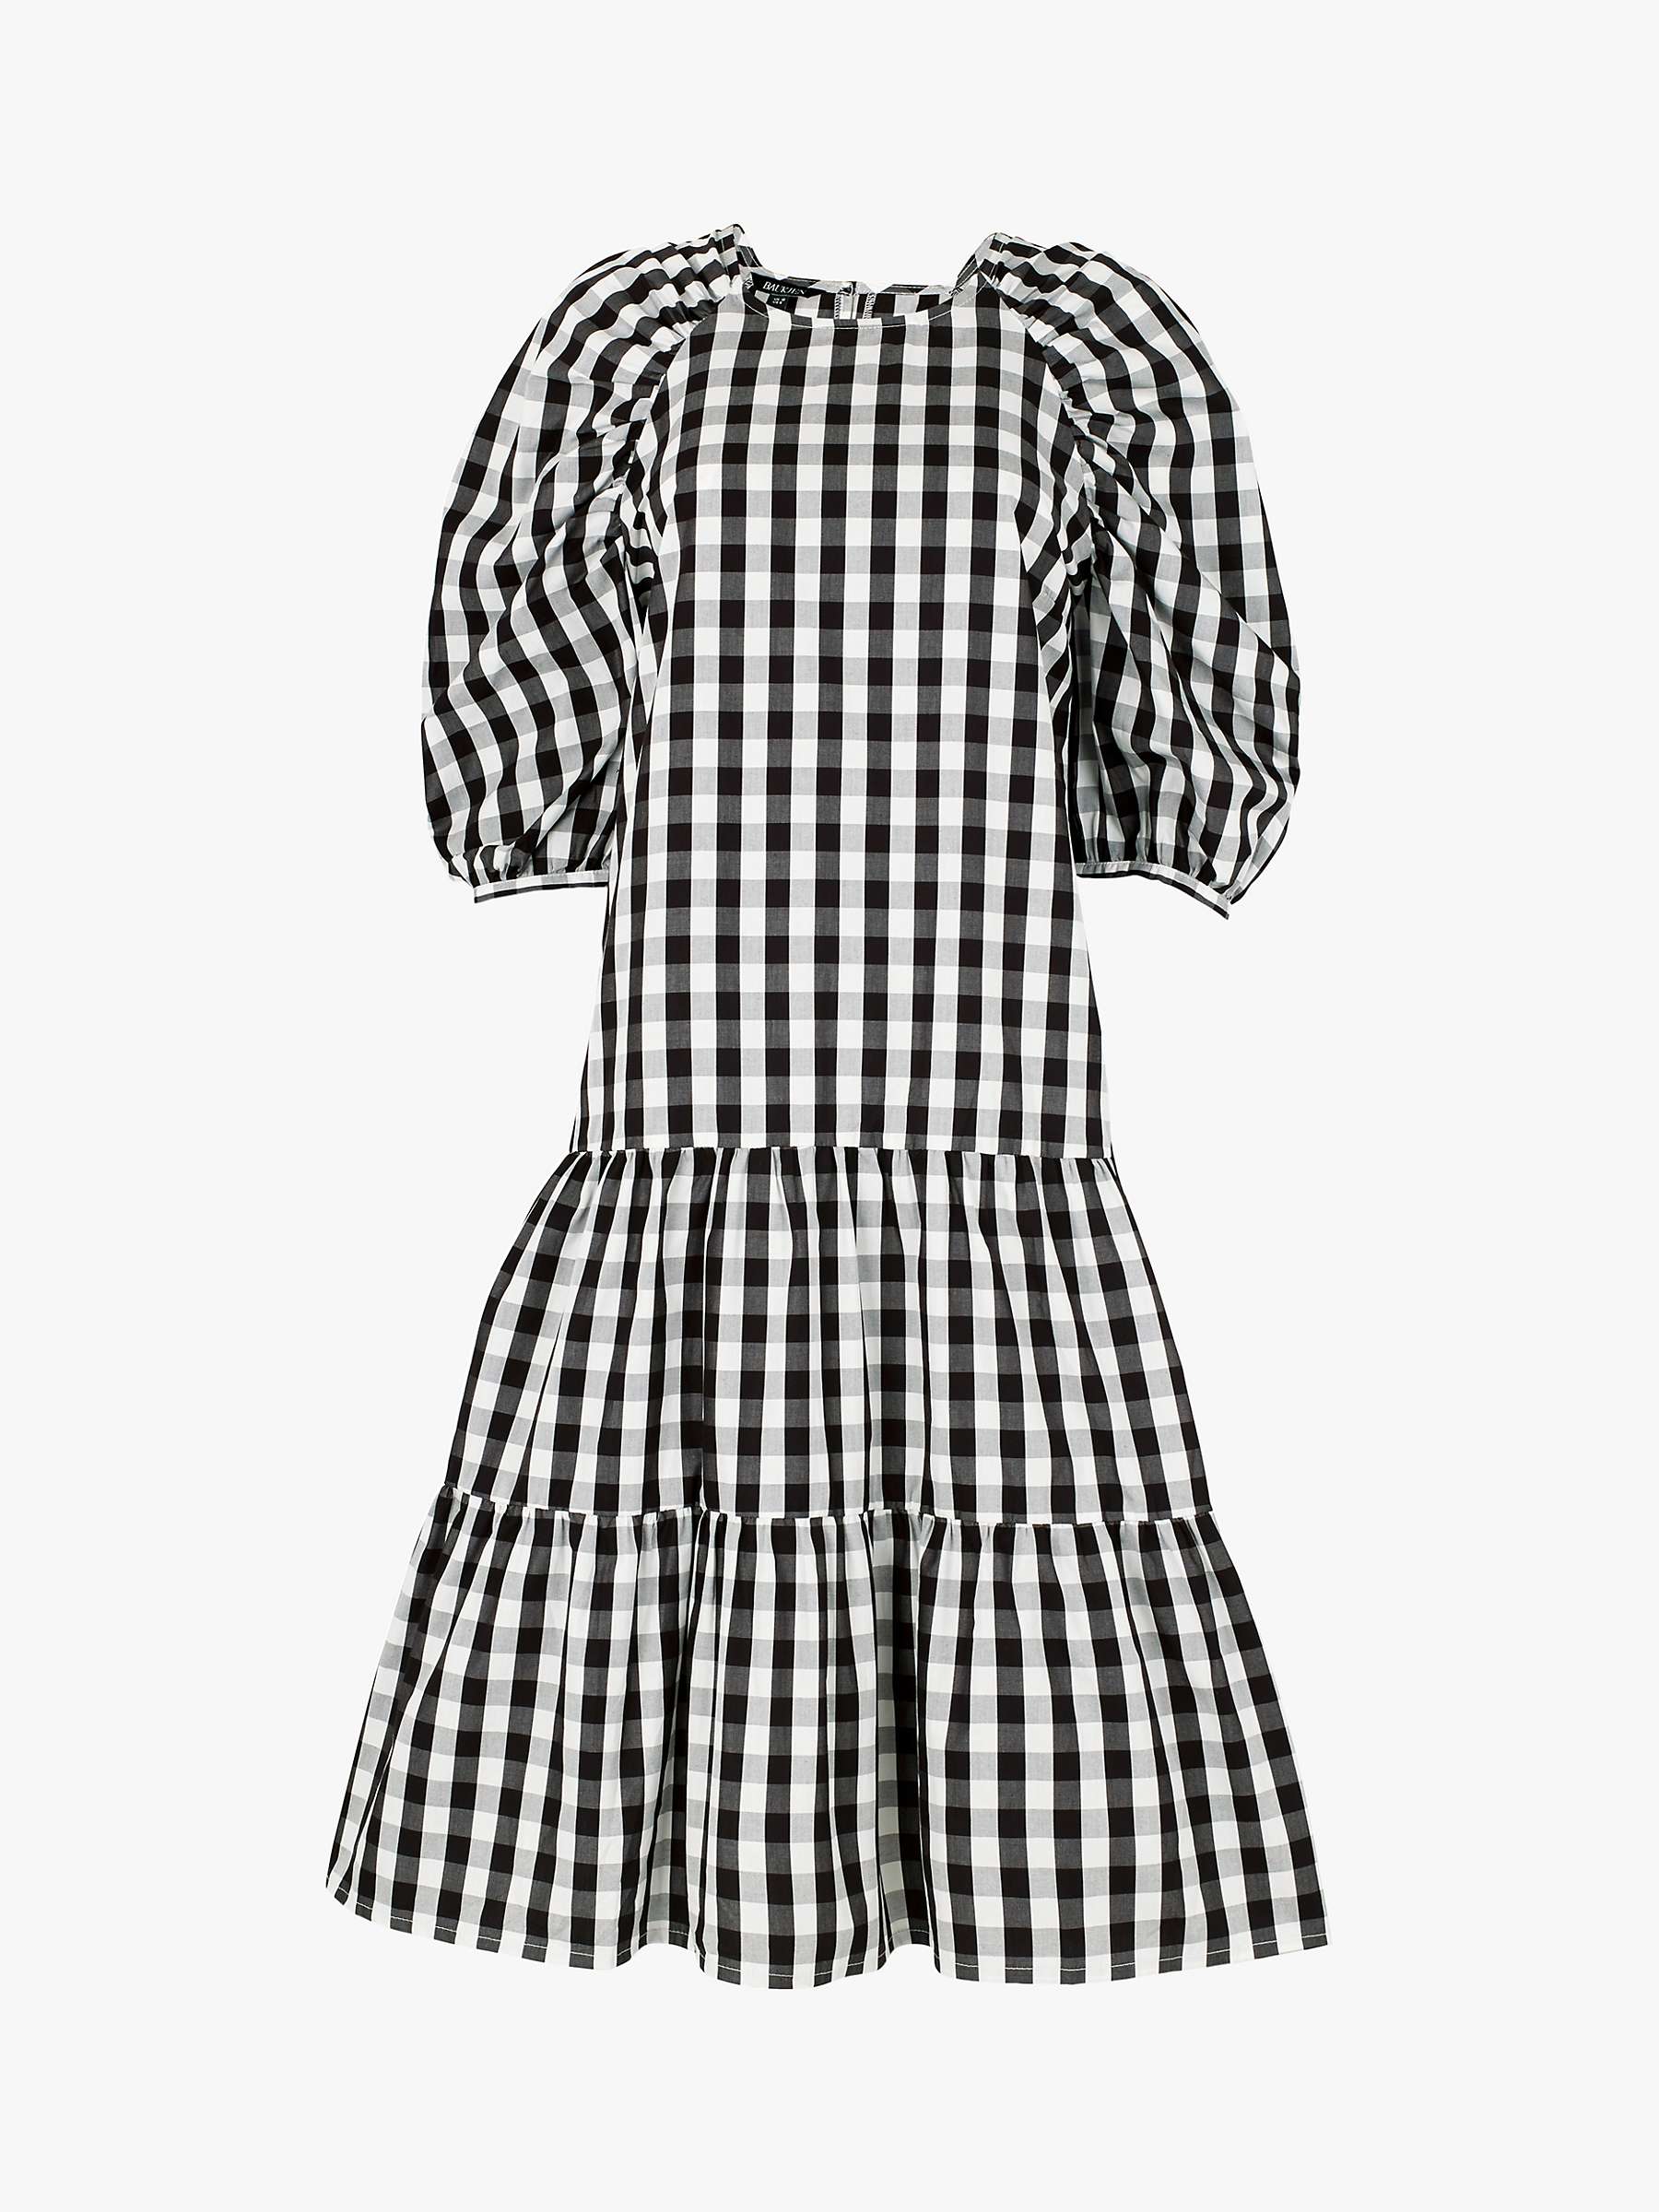 Buy Baukjen Ruth Gingham Tiered Dress, Black/Multi Online at johnlewis.com